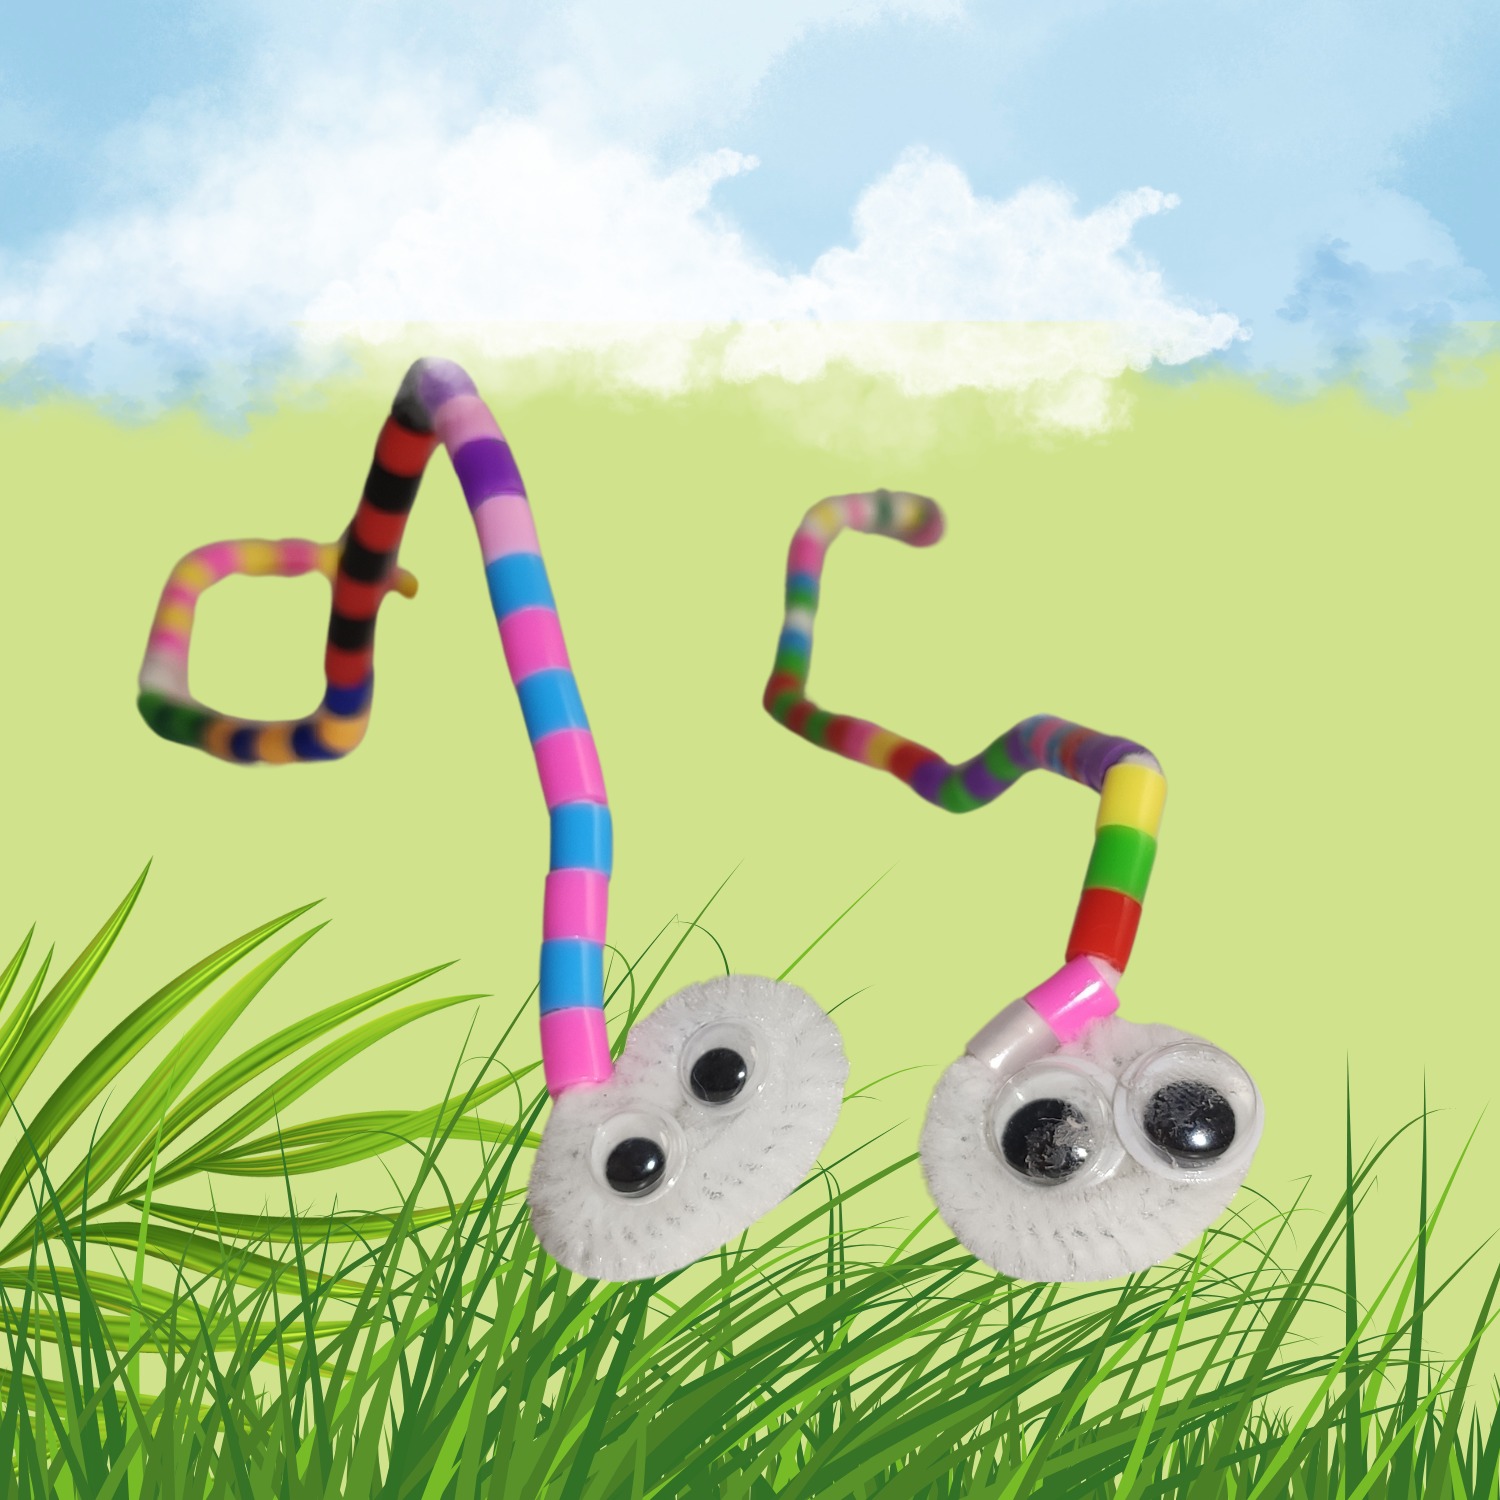 Titelbild zur Bastel- und DIY-Idee für Kinder '(618) Basteln mit Bügelperlen und Pfeifenputzern – Lustige Würmer'